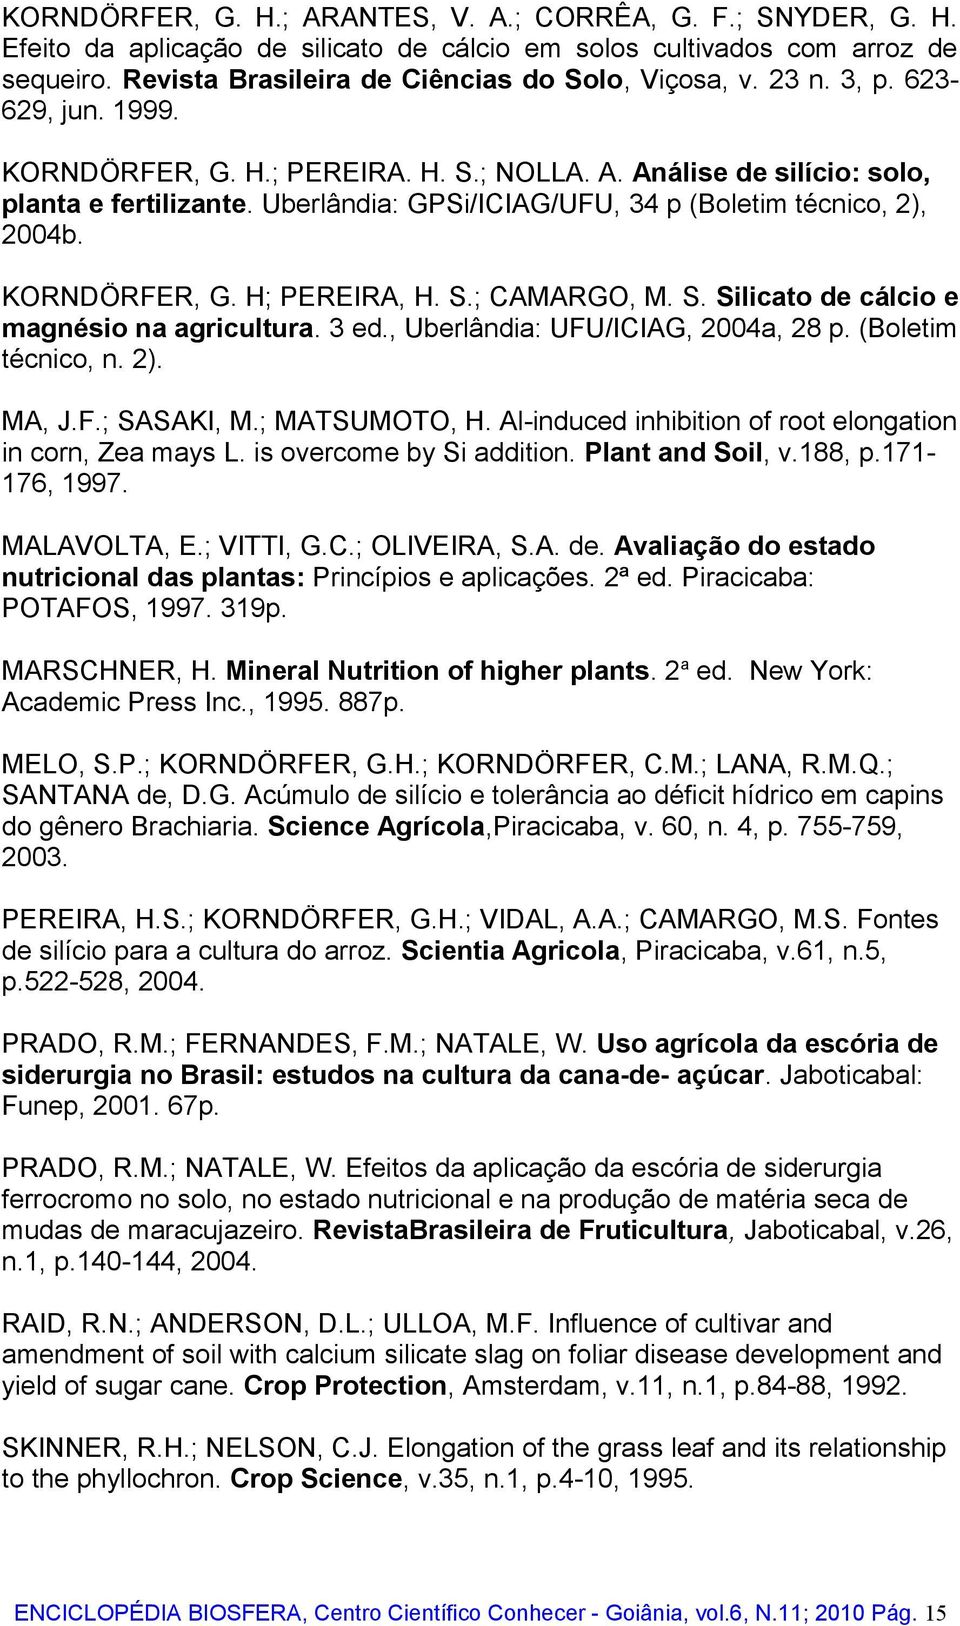 KORNDÖRFER, G. H; PEREIRA, H. S.; CAMARGO, M. S. Silicato de cálcio e magnésio na agricultura. 3 ed., Uberlândia: UFU/ICIAG, 2004a, 28 p. (Boletim técnico, n. 2). MA, J.F.; SASAKI, M.; MATSUMOTO, H.